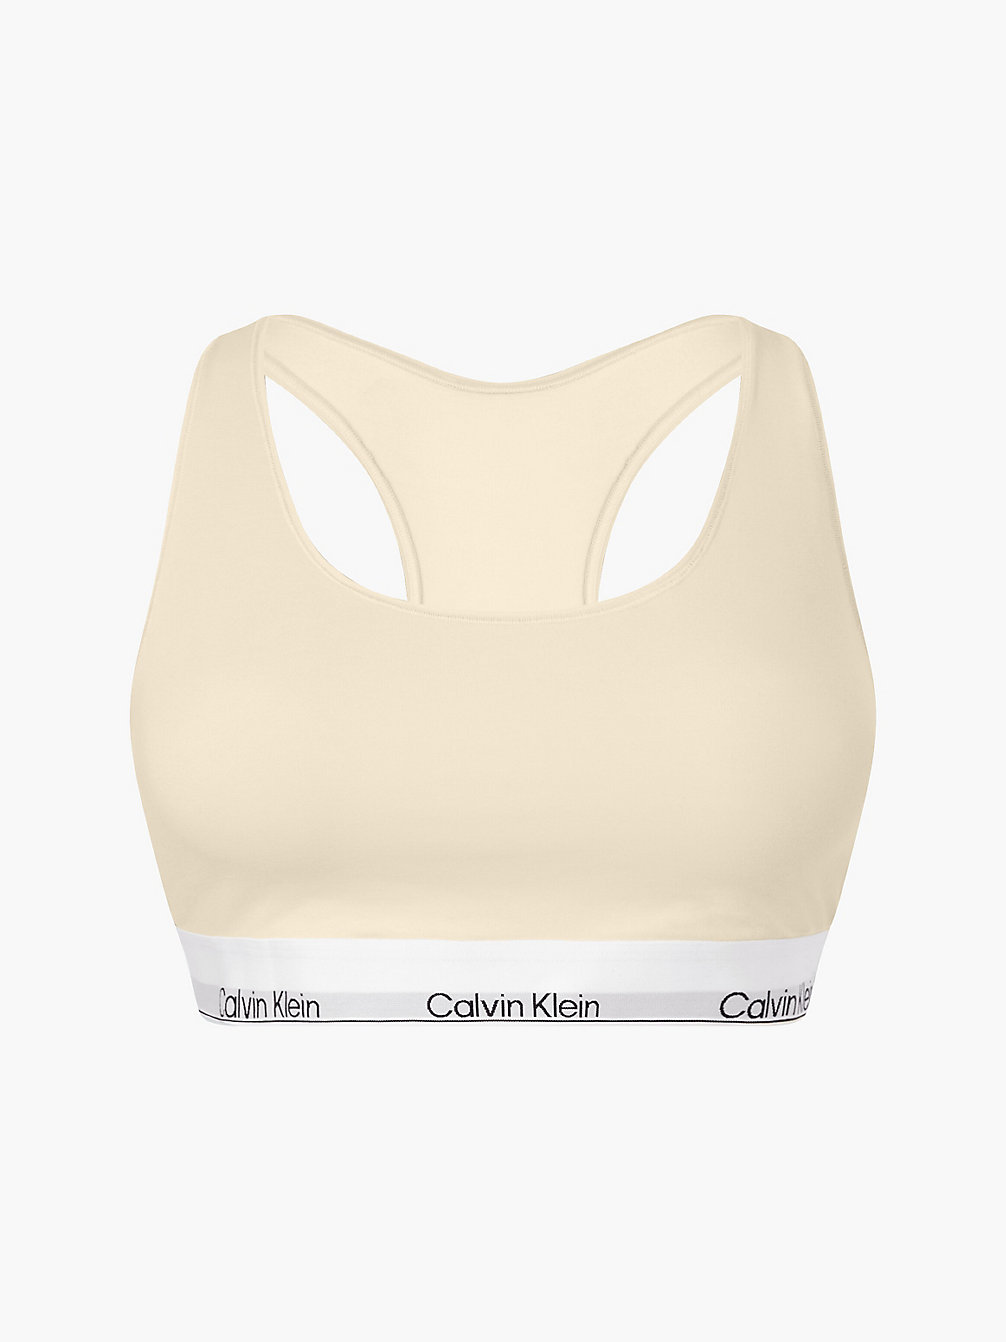 STONE > Бралетт плюс-сайз – Modern Cotton > undefined Женщины - Calvin Klein